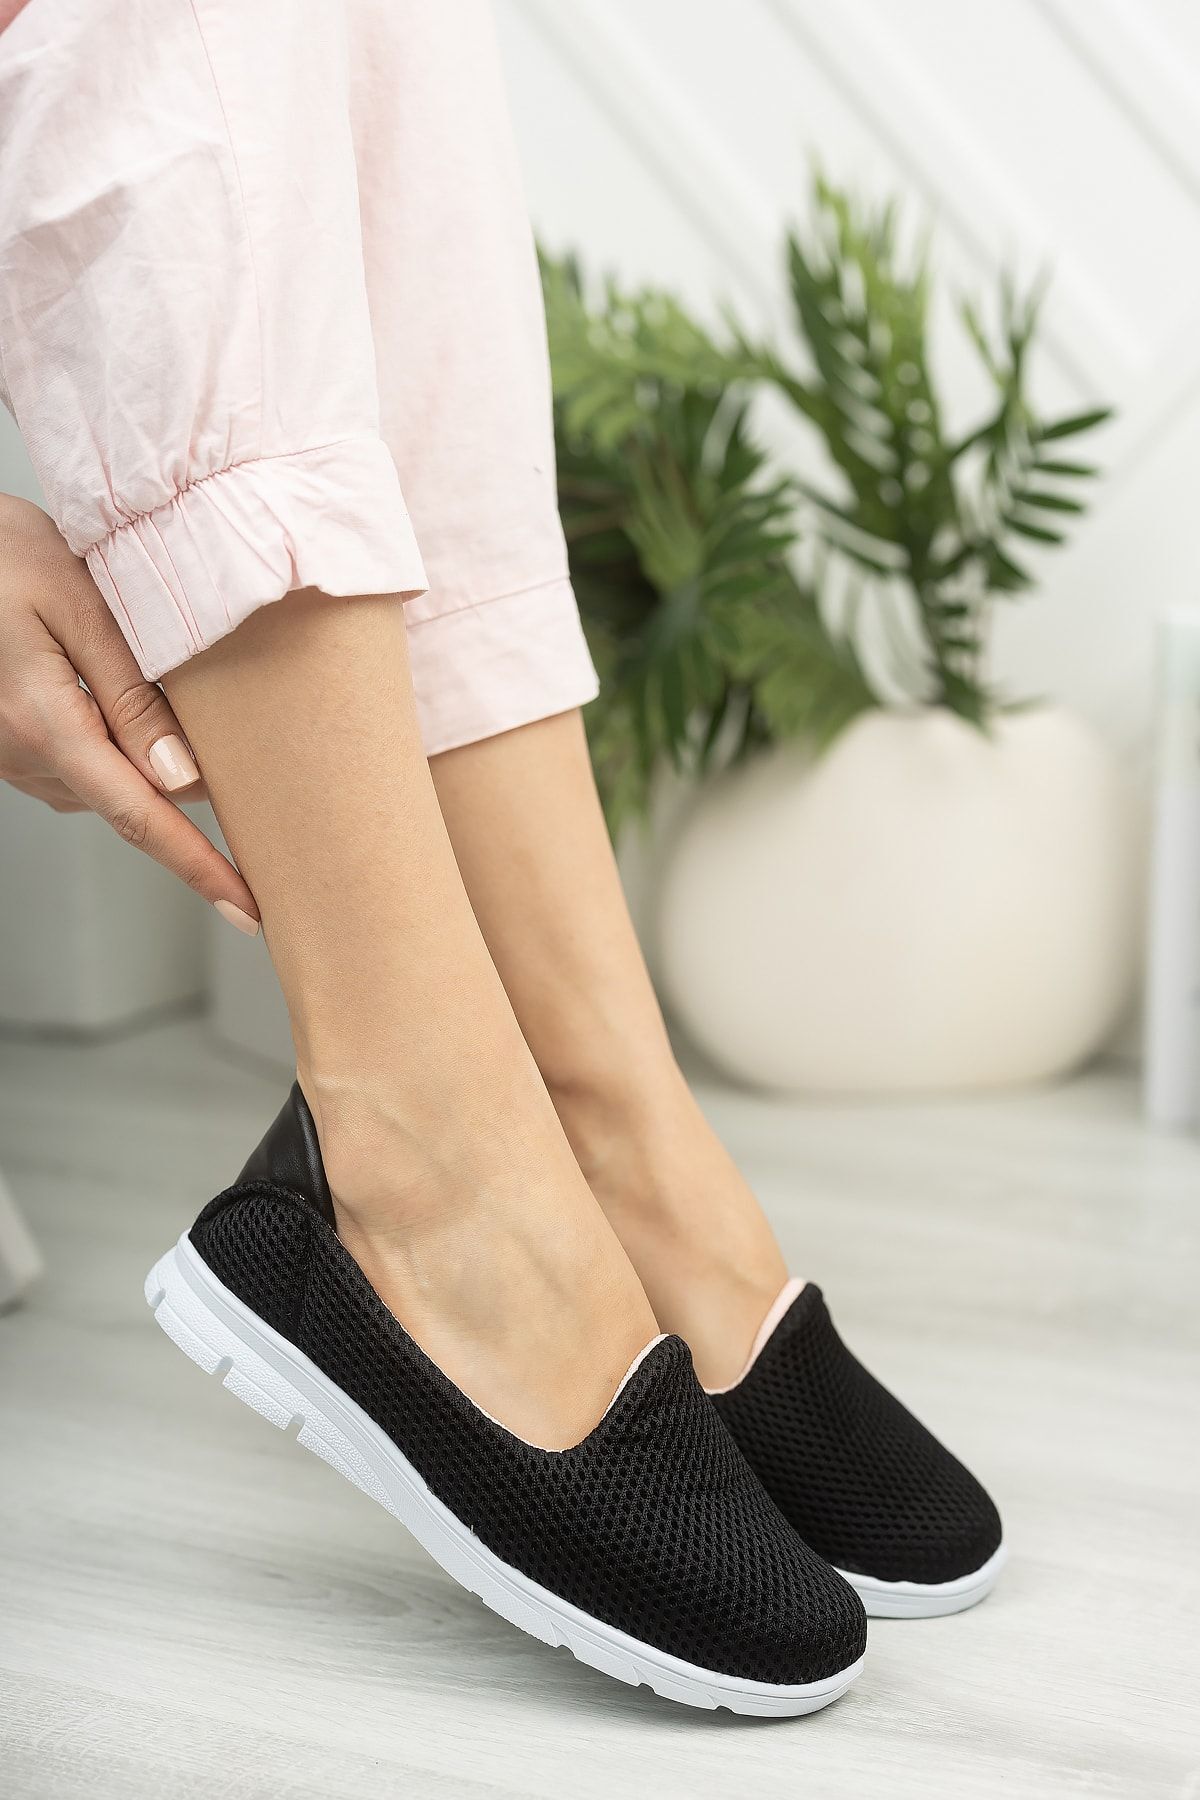 StWenn Kadın Spor Babet Yürüyüş Ayakkabısı Hafif Ortopedik Taban